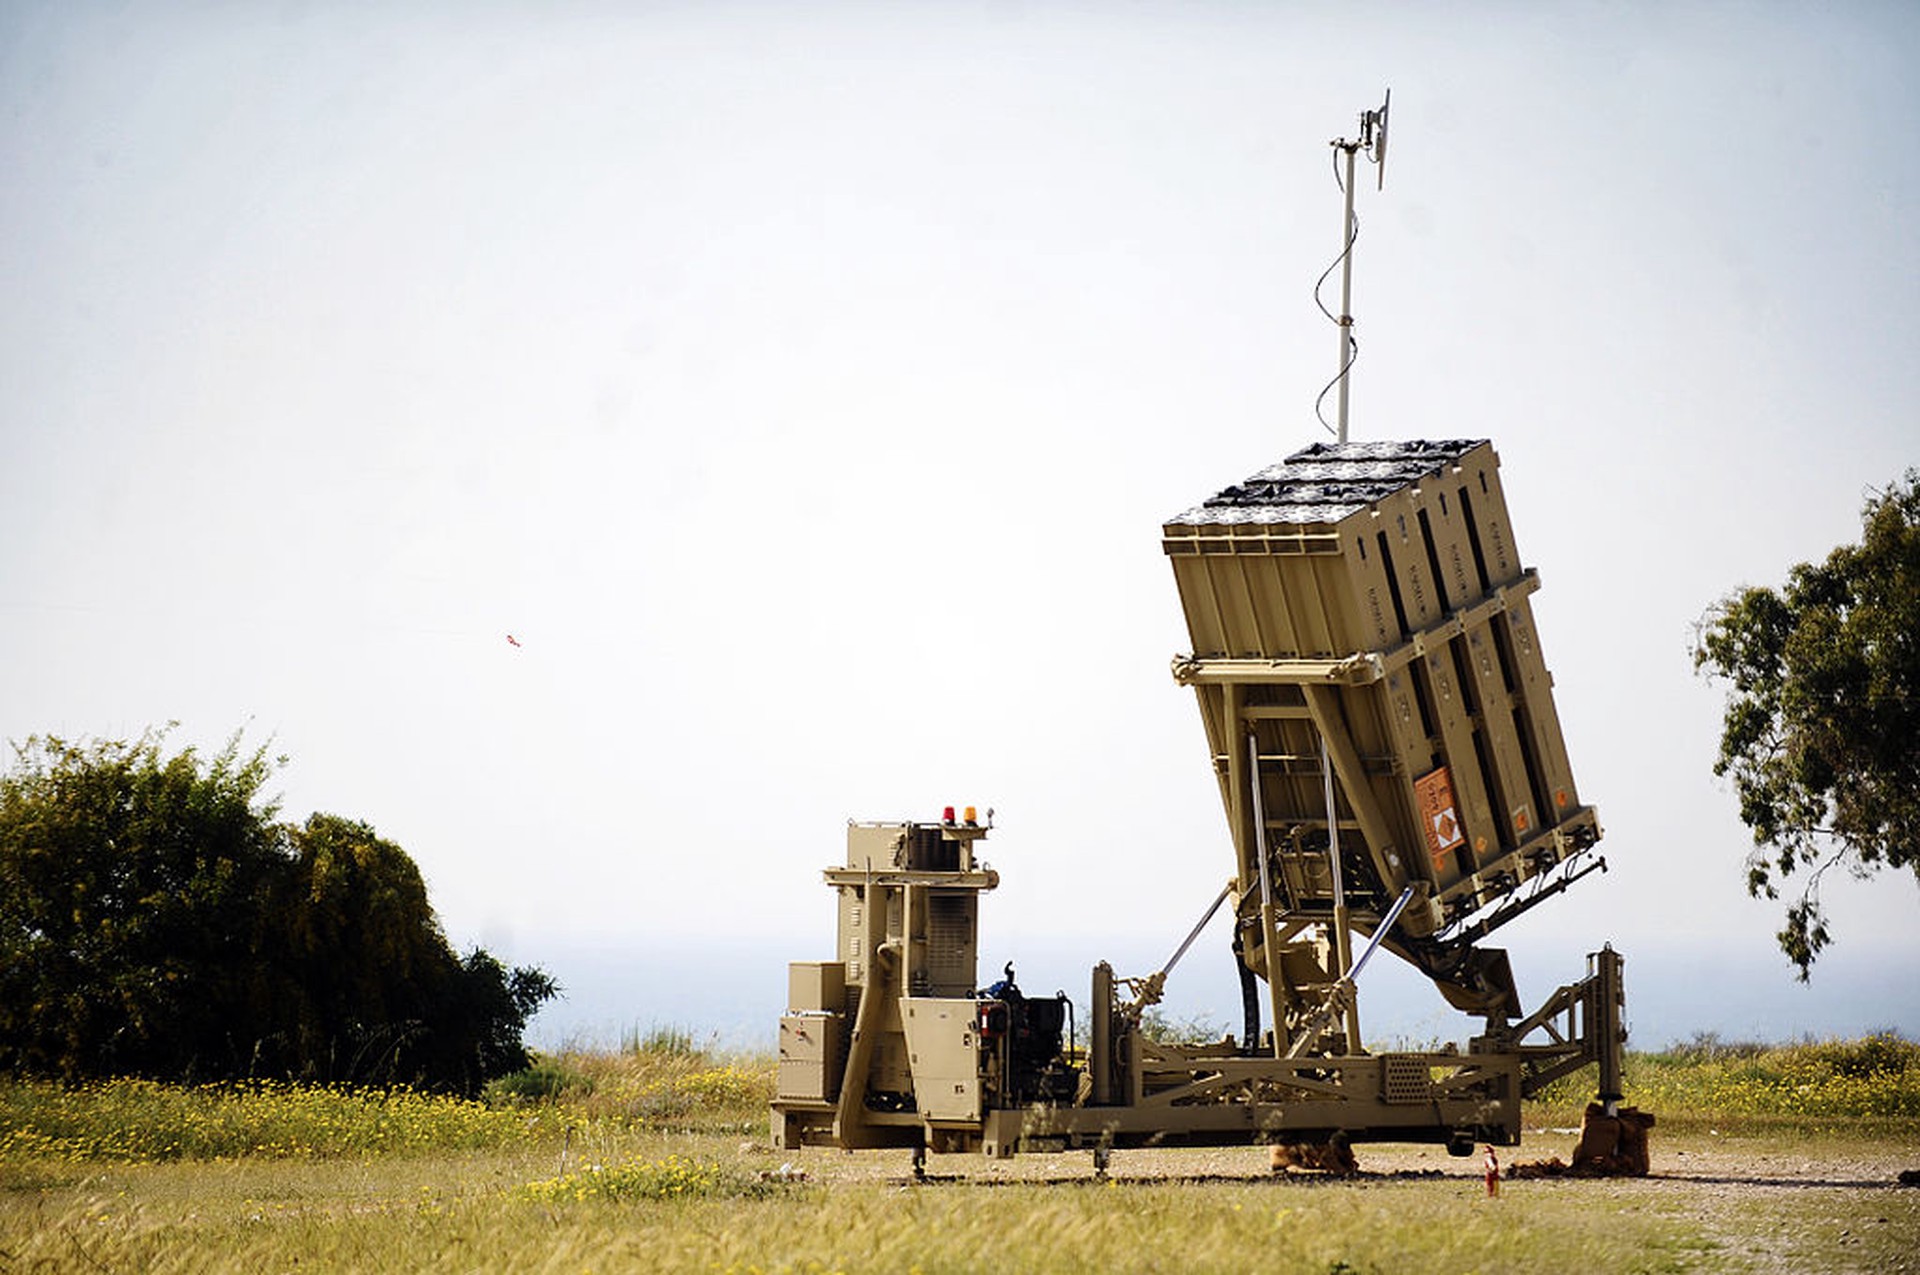 NI: Израиль боится поставлять ВСУ системы ПВО «Железный купол» из-за действий Москвы